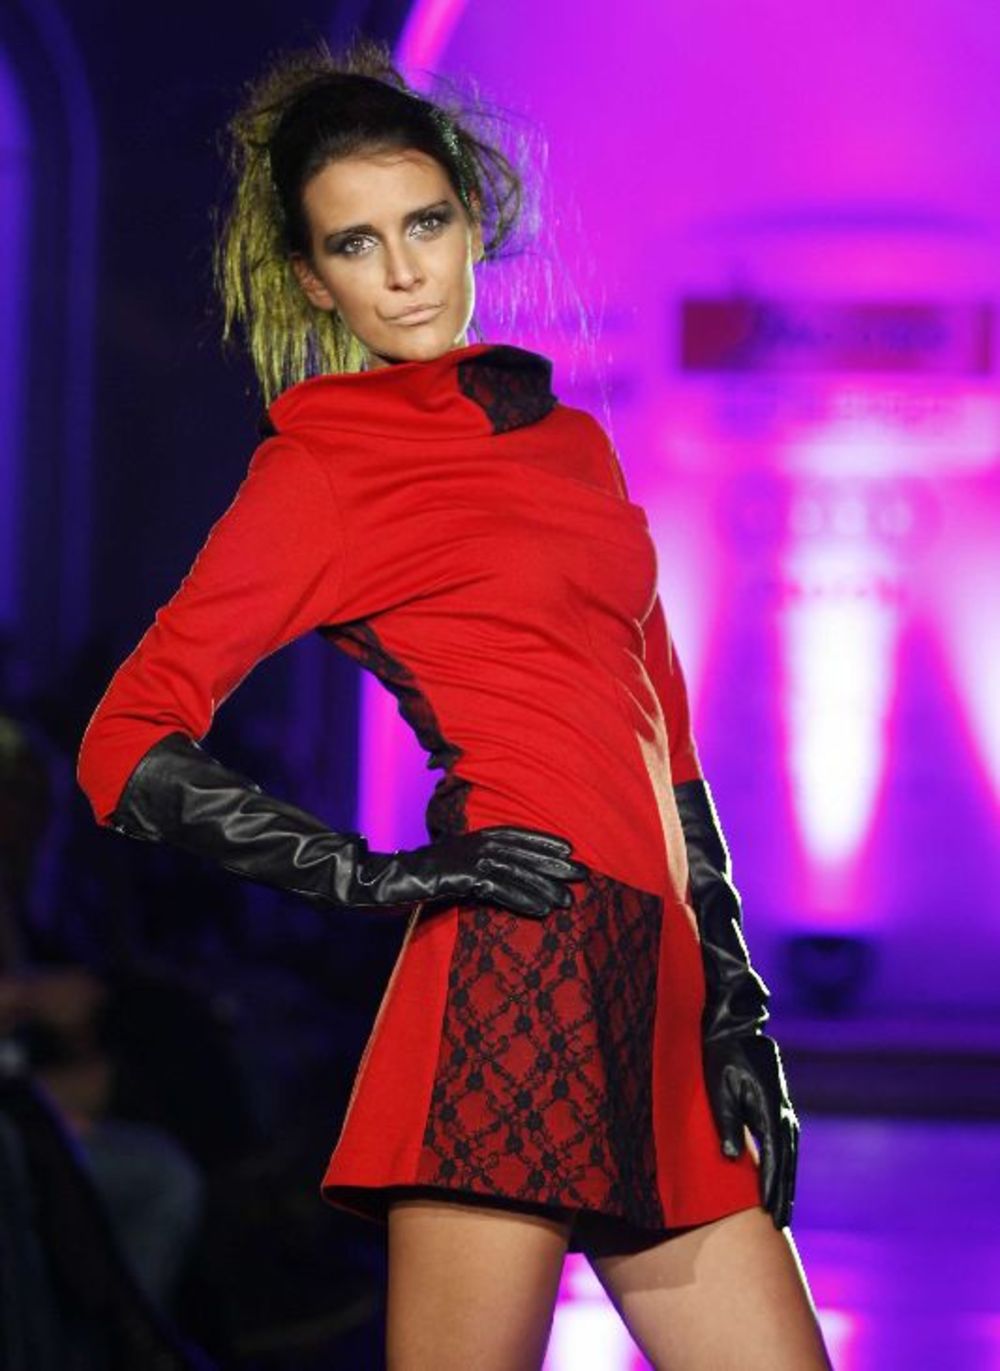 Poznata modna dizajnerka Suzana Perić predstavila je 12. oktobra u Domu garde, u prisustvu velikog broja poznatih ličnosti, svoju novu koleciju She Rules čije je zaštitno lice Bojana Stojković